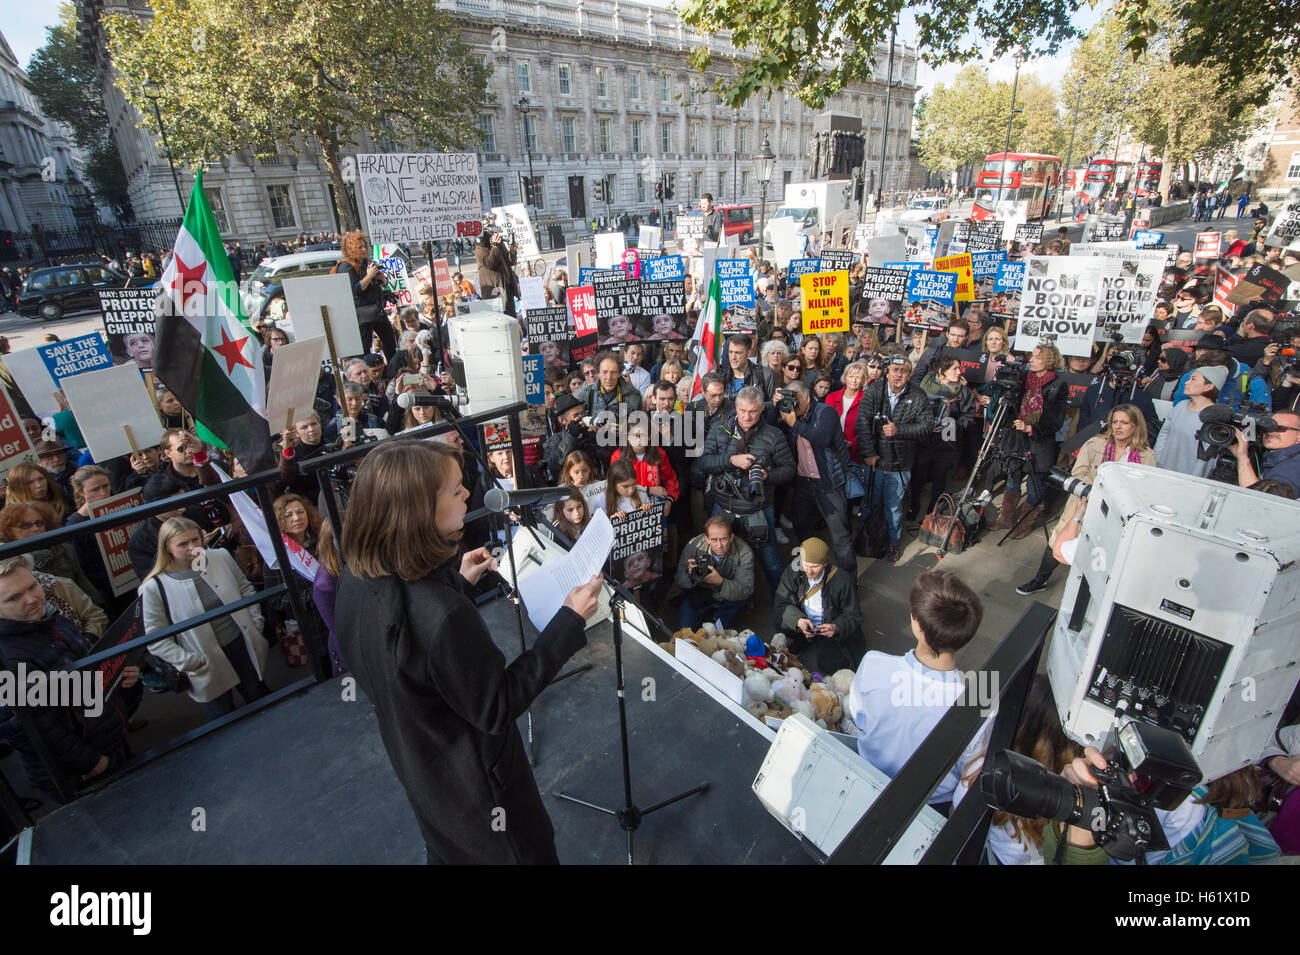 Downing Street/Whitehall actrice Carey Mulligan.lors d'un rassemblement dans la région de Whitehall qui demandent au gouvernement de sauver les enfants d'Alep Banque D'Images